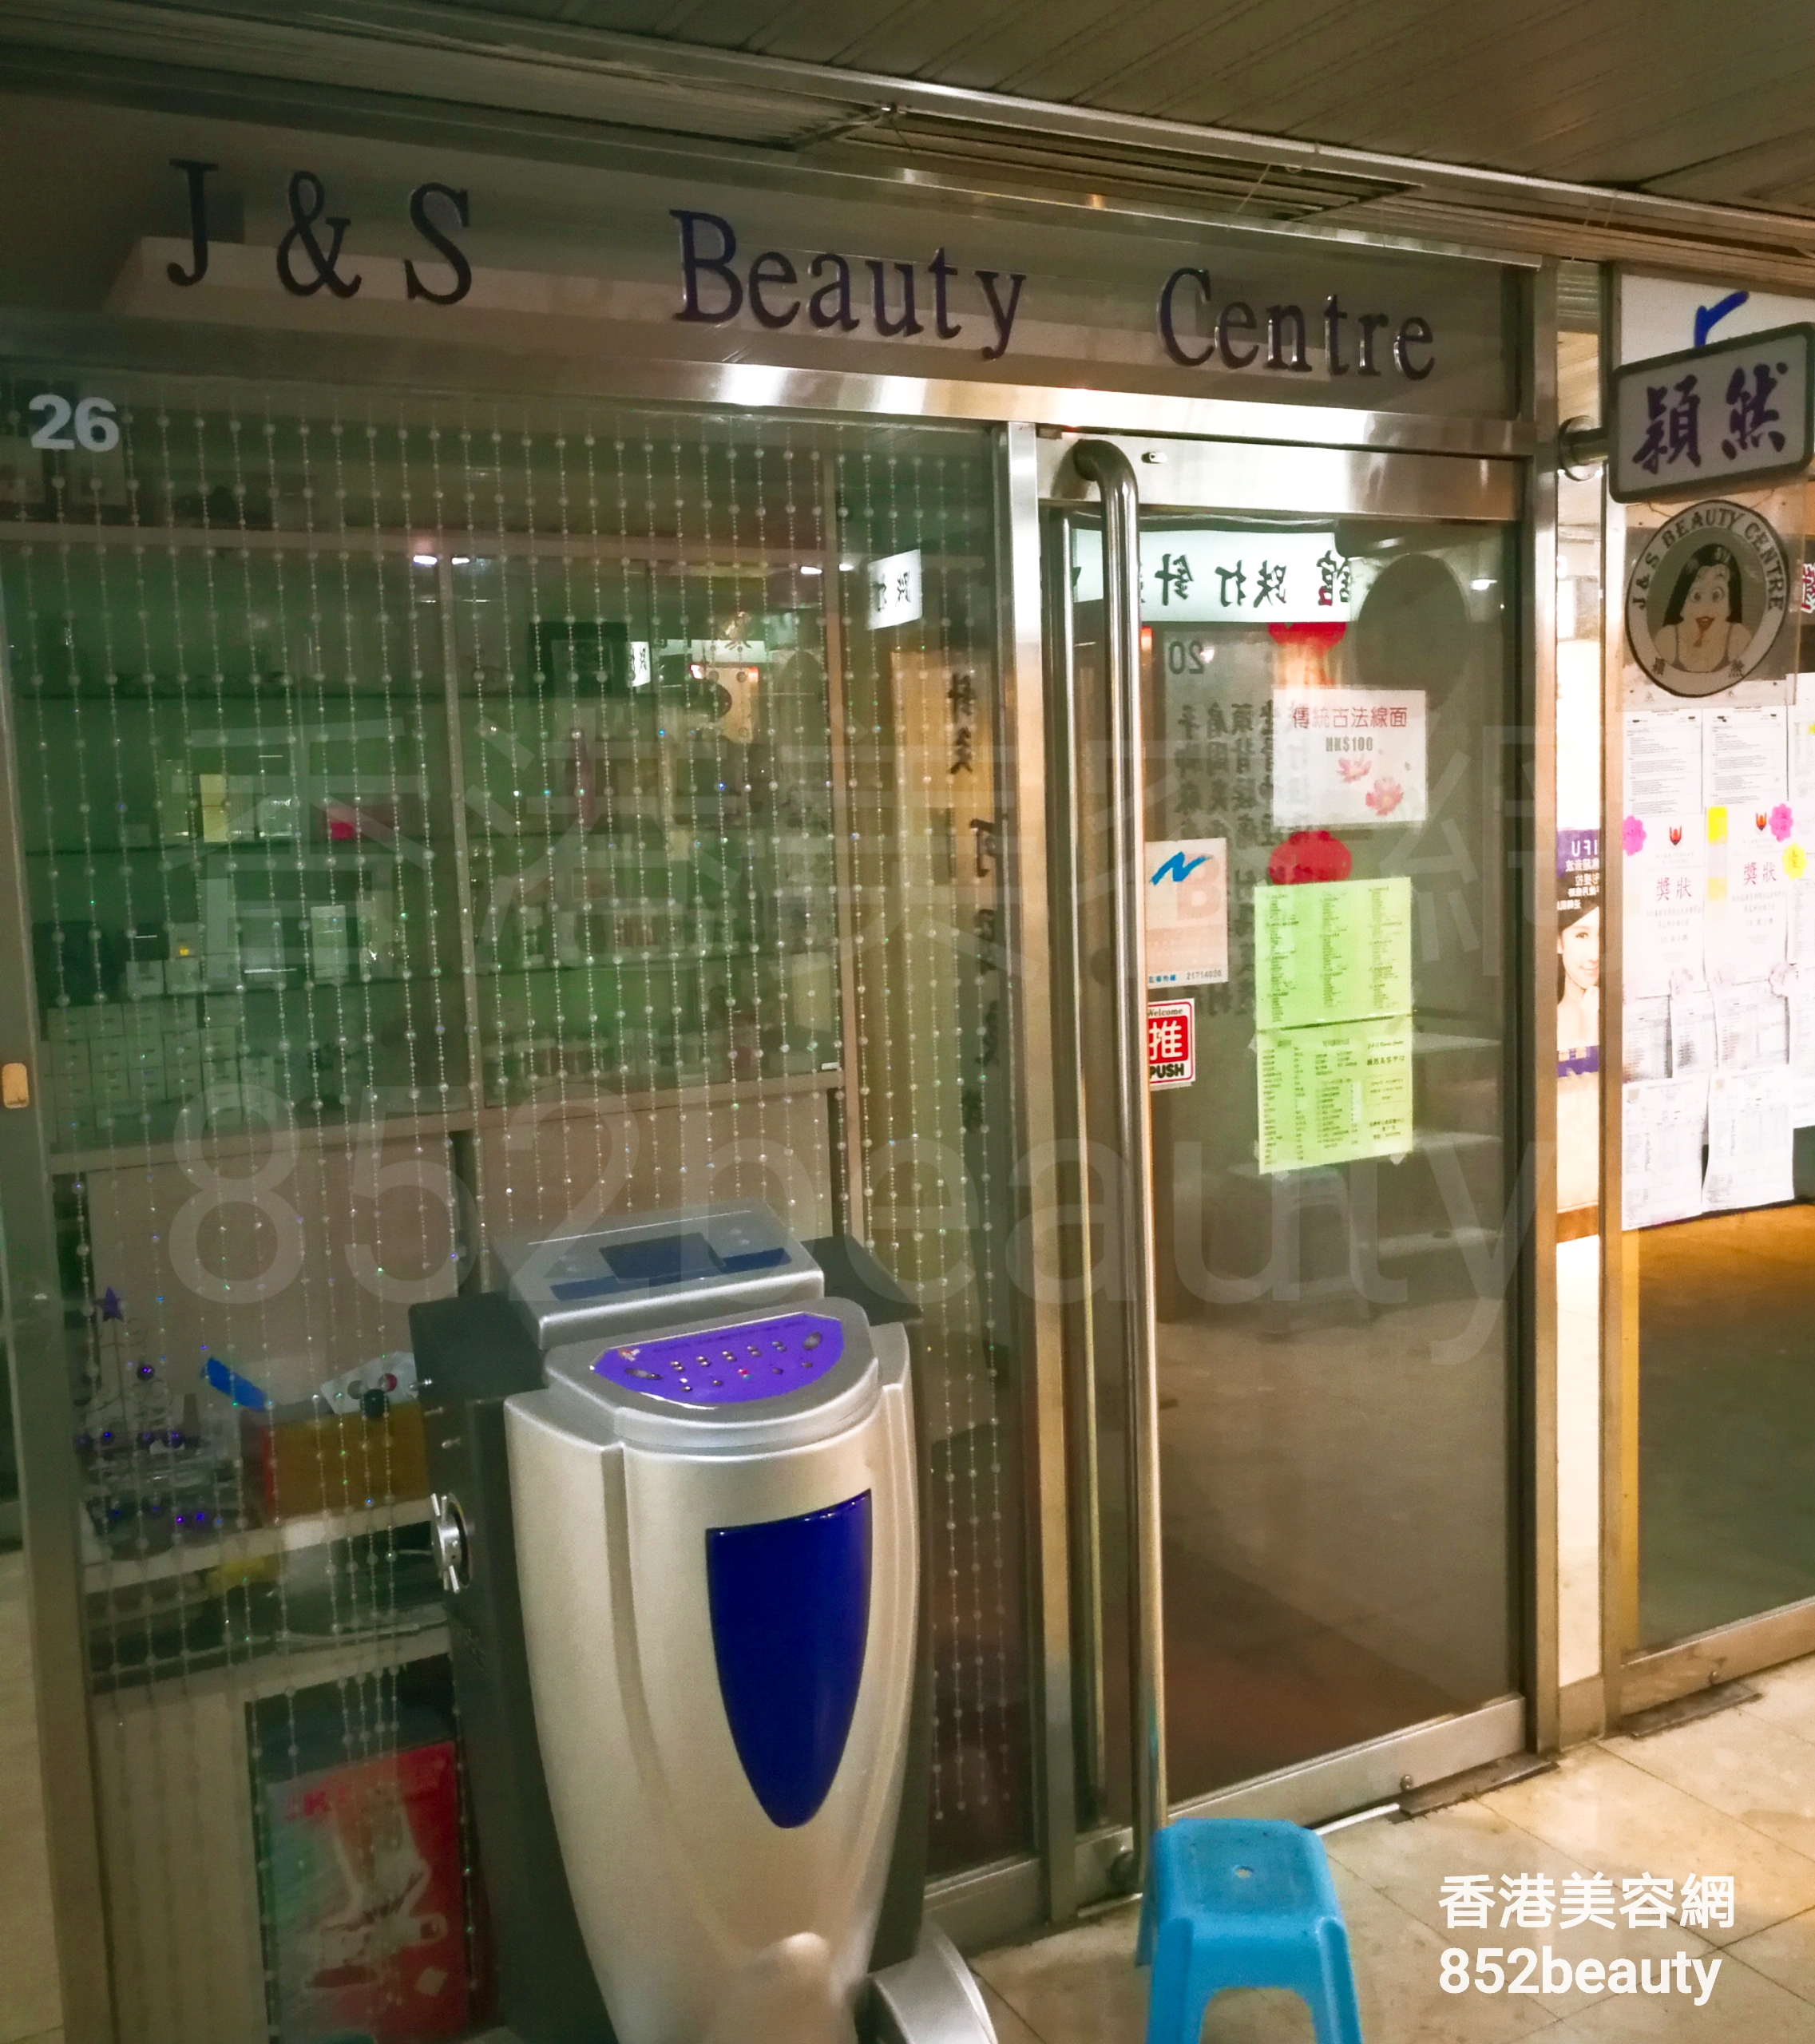 Eyelashes: J&S Beauty Centre 穎然美容中心